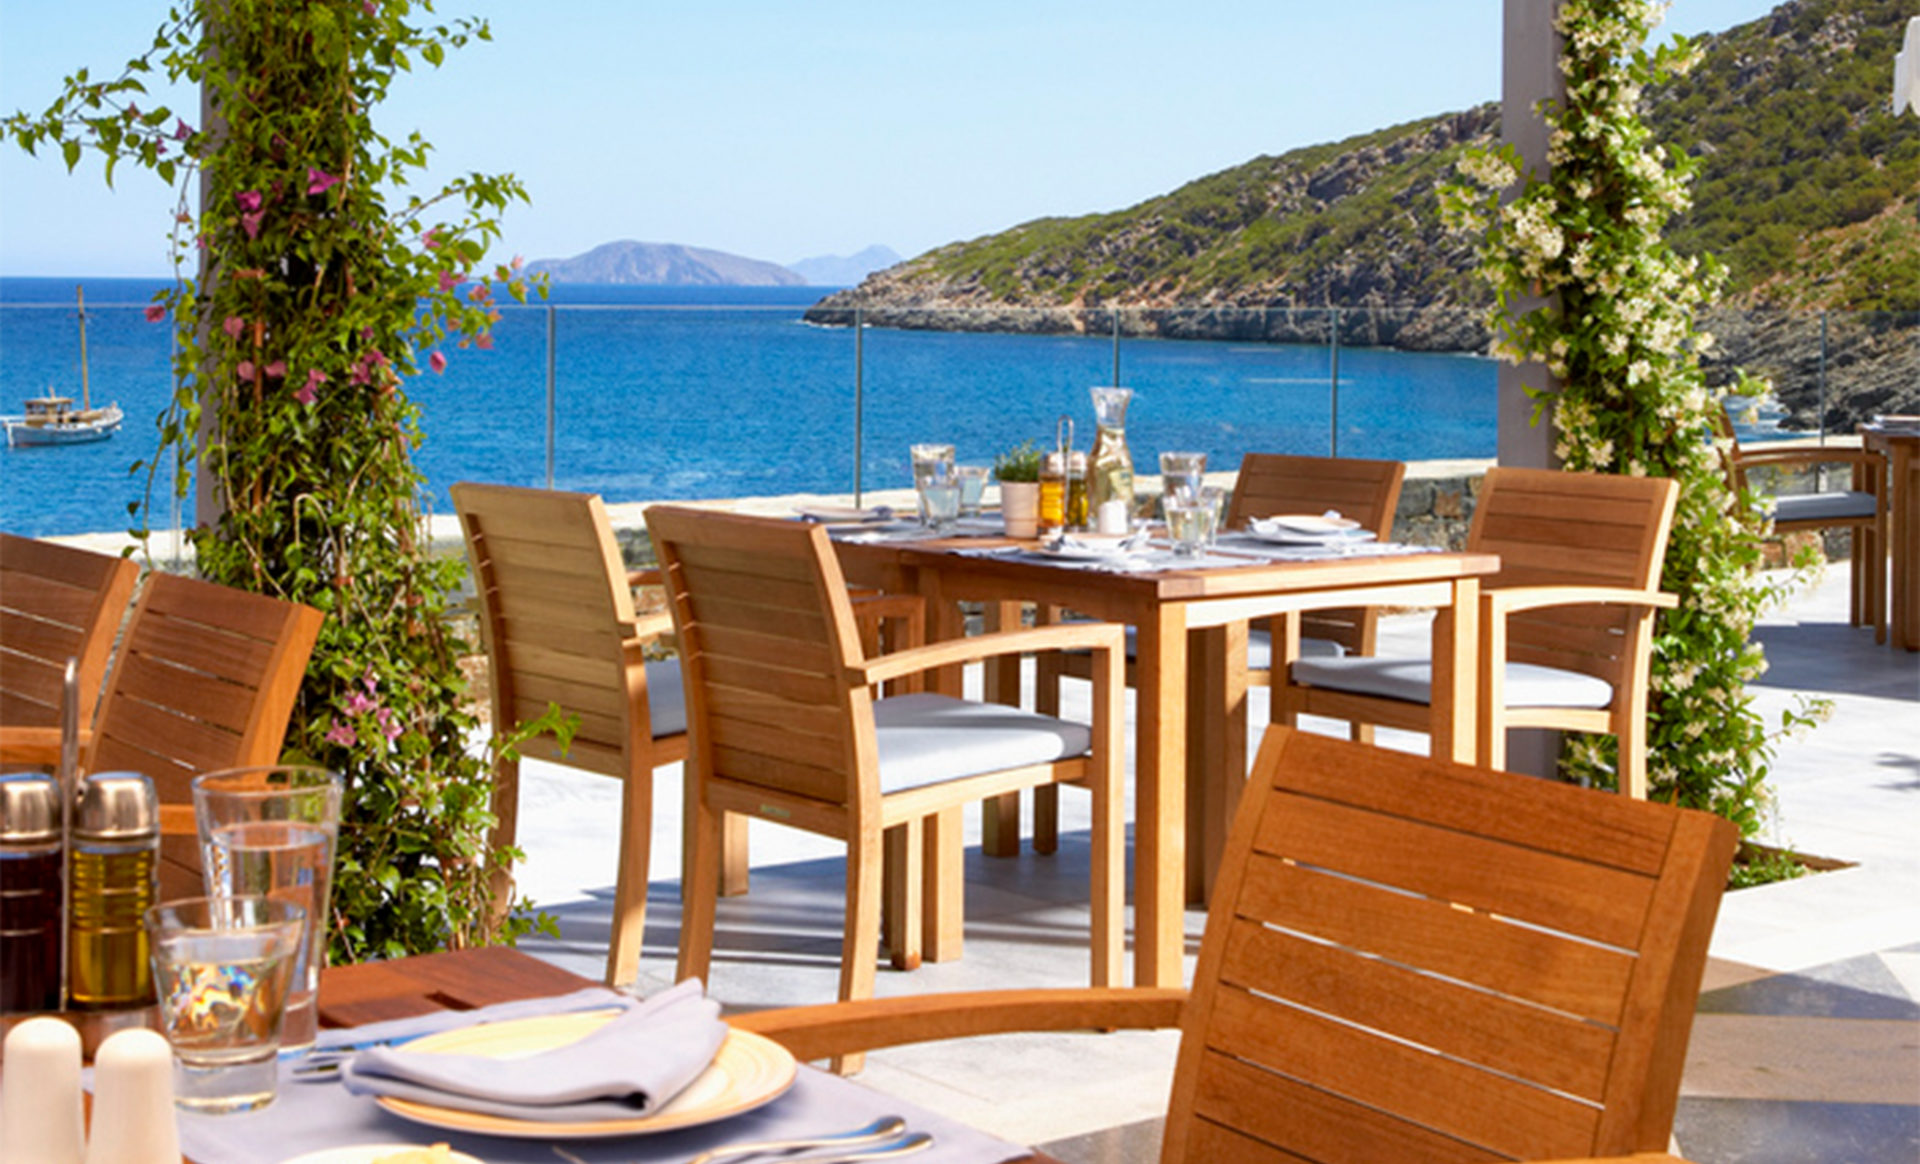 Daios-Cove-Greece-Outdoor-Restaurant